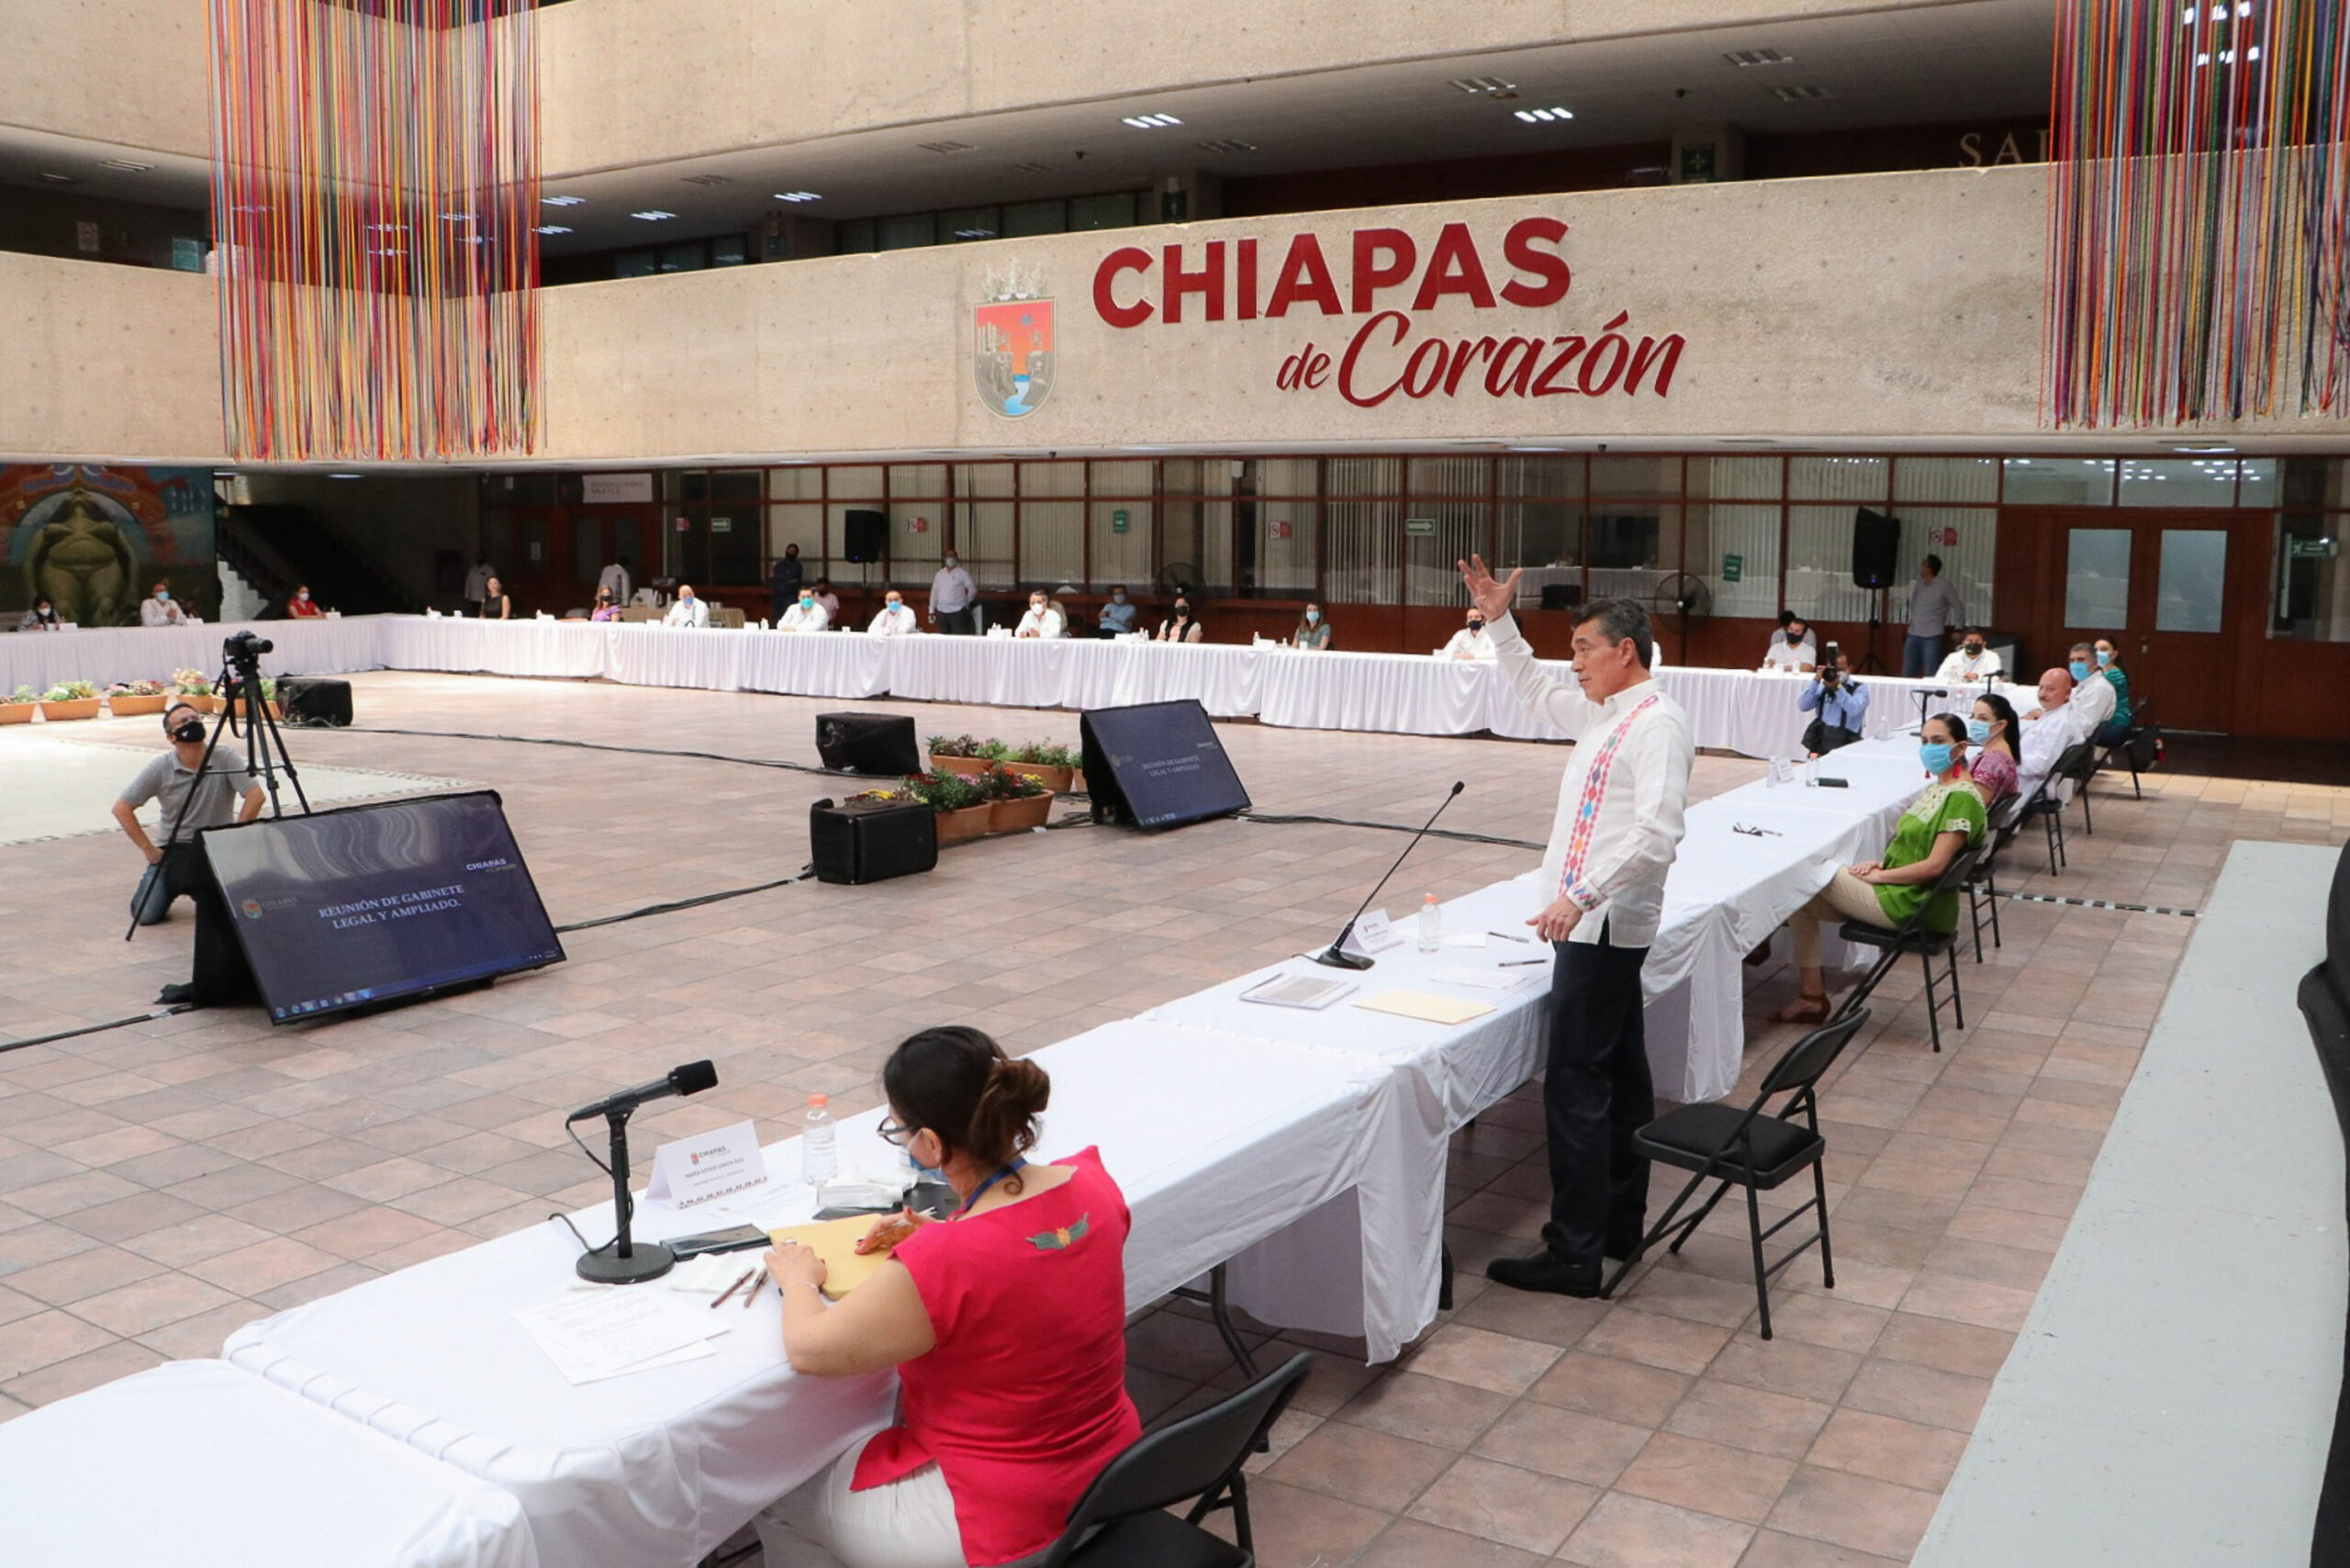 En Chiapas avanzamos porque ya no se le quita al pueblo para mantener privilegios del gobierno: Rutilio